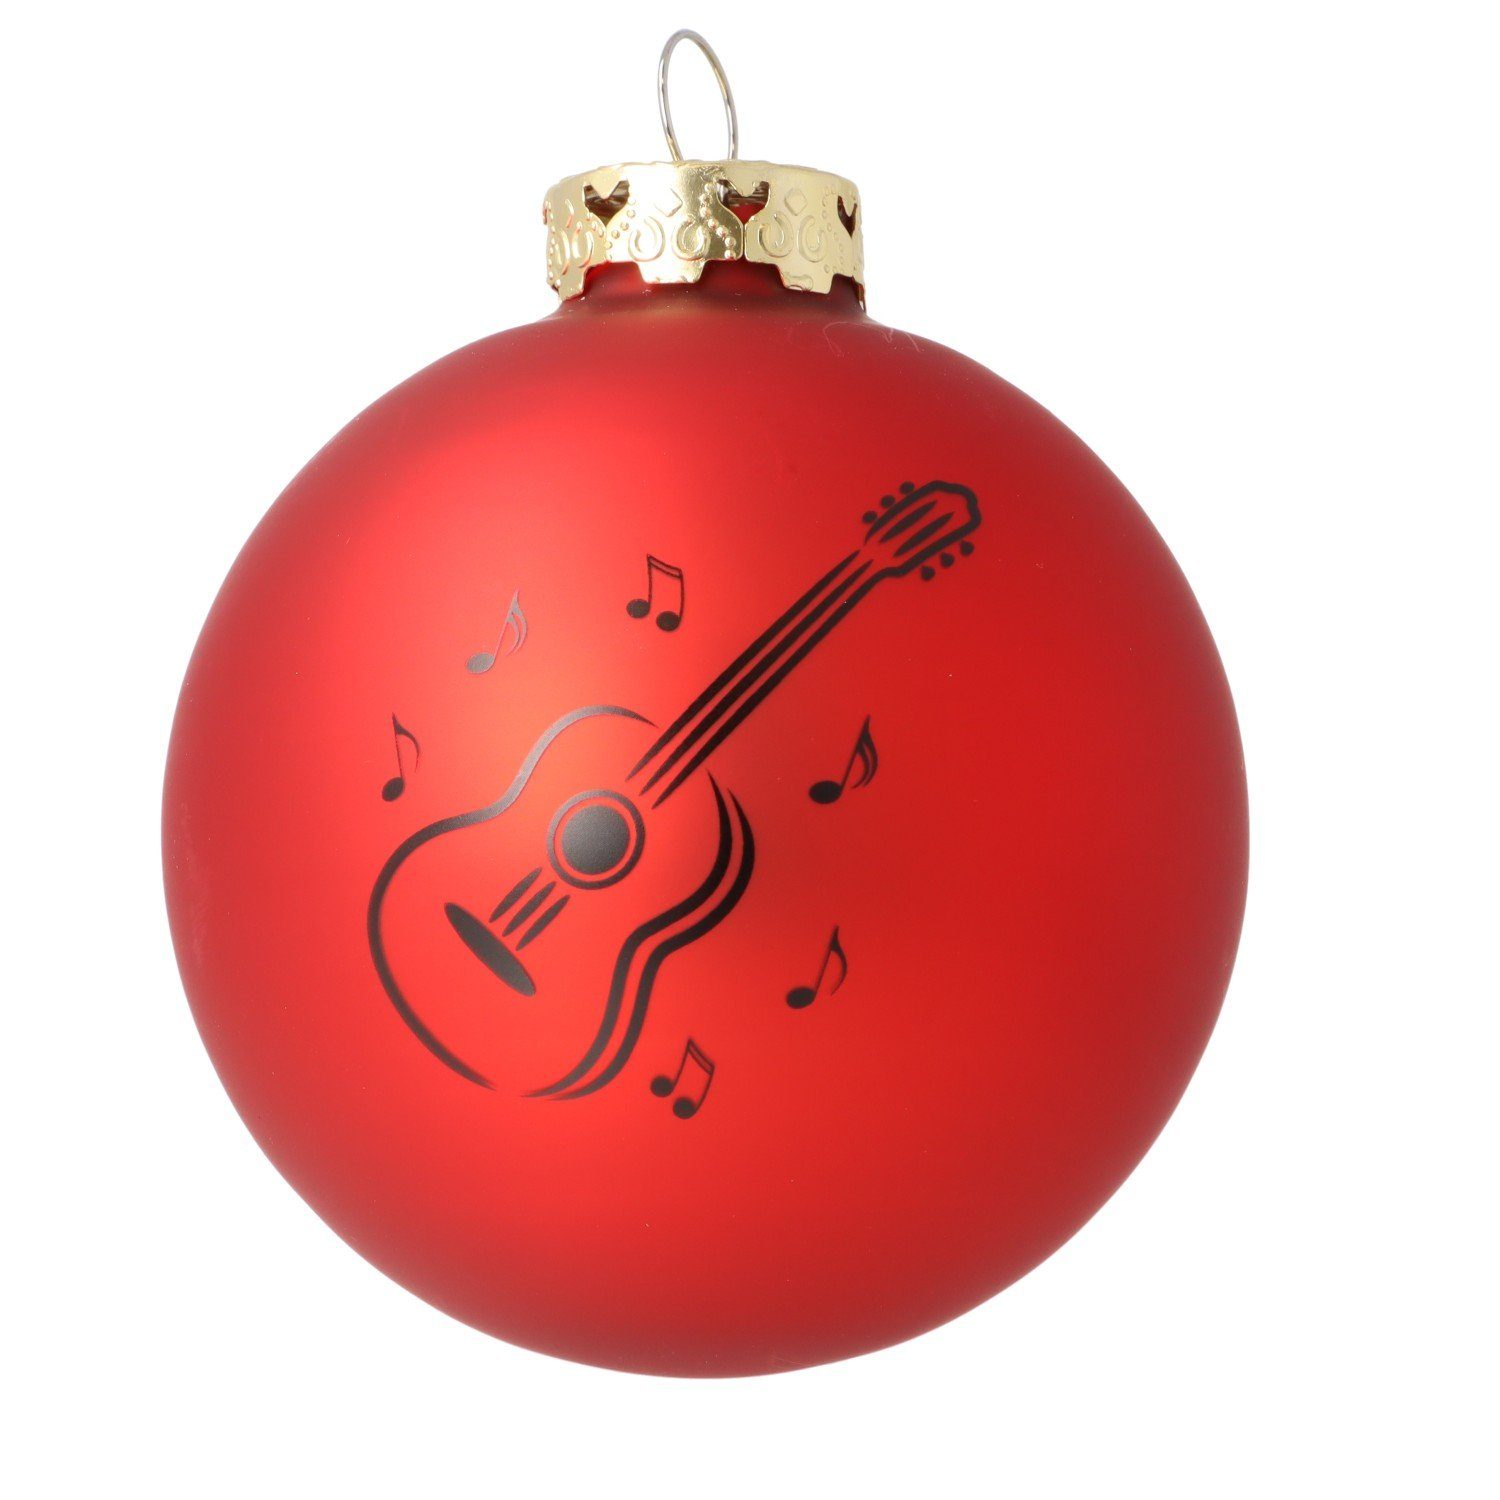 Glas mit Weihnachtsbaumkugel, schwarzem Konzertgitarre-Druck, 3er-Set Musikboutique aus rot Farbe